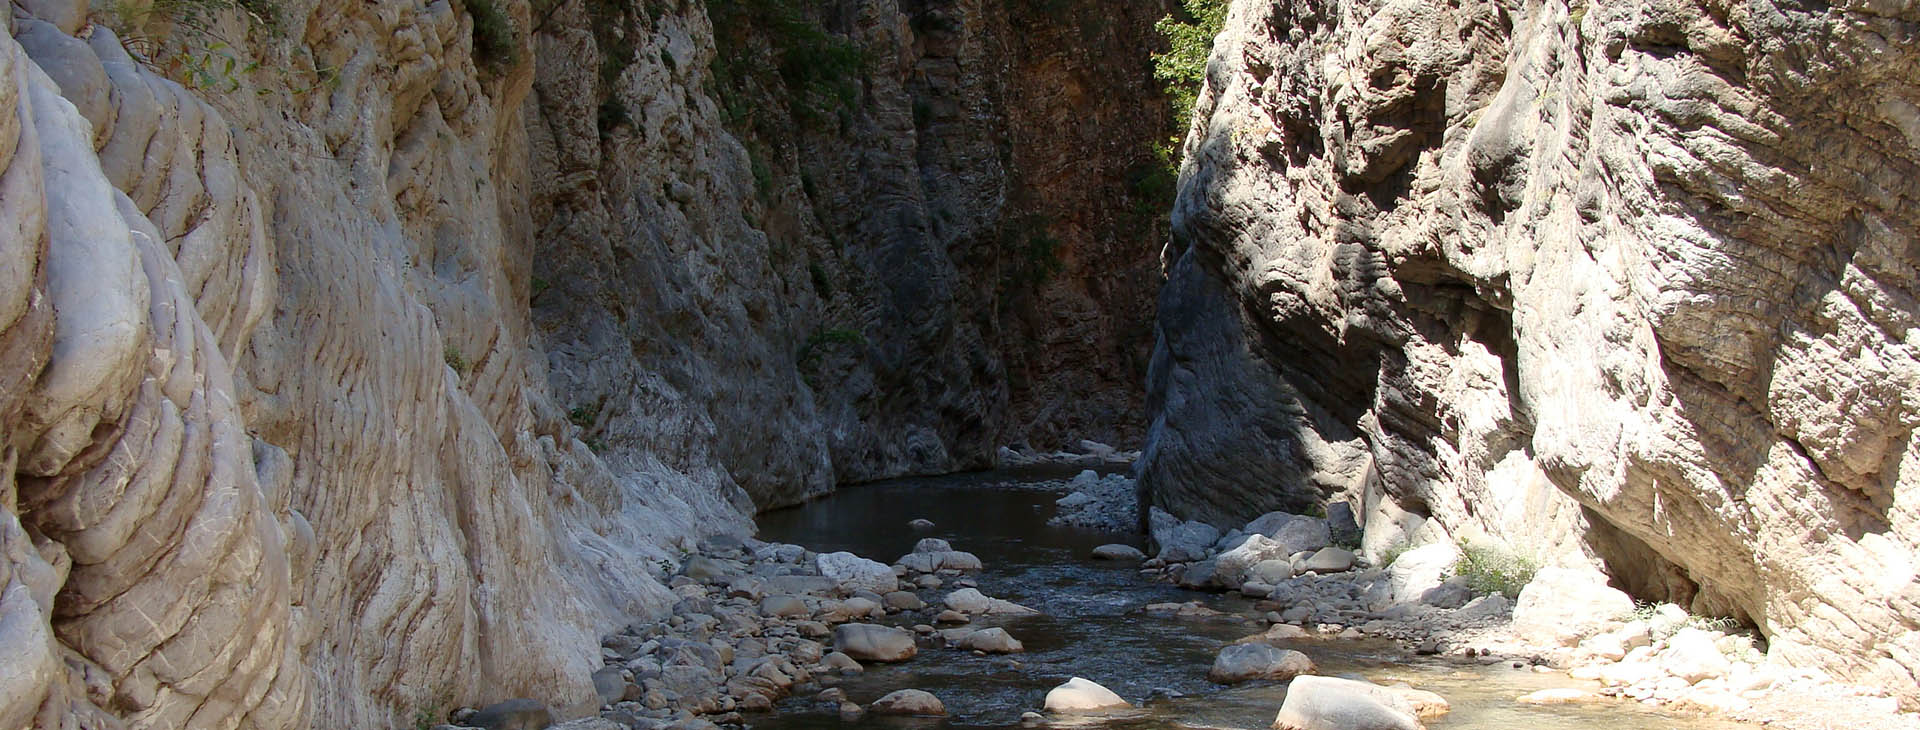 Krikelopotemos river / Pantavrechi gorge, Evritania